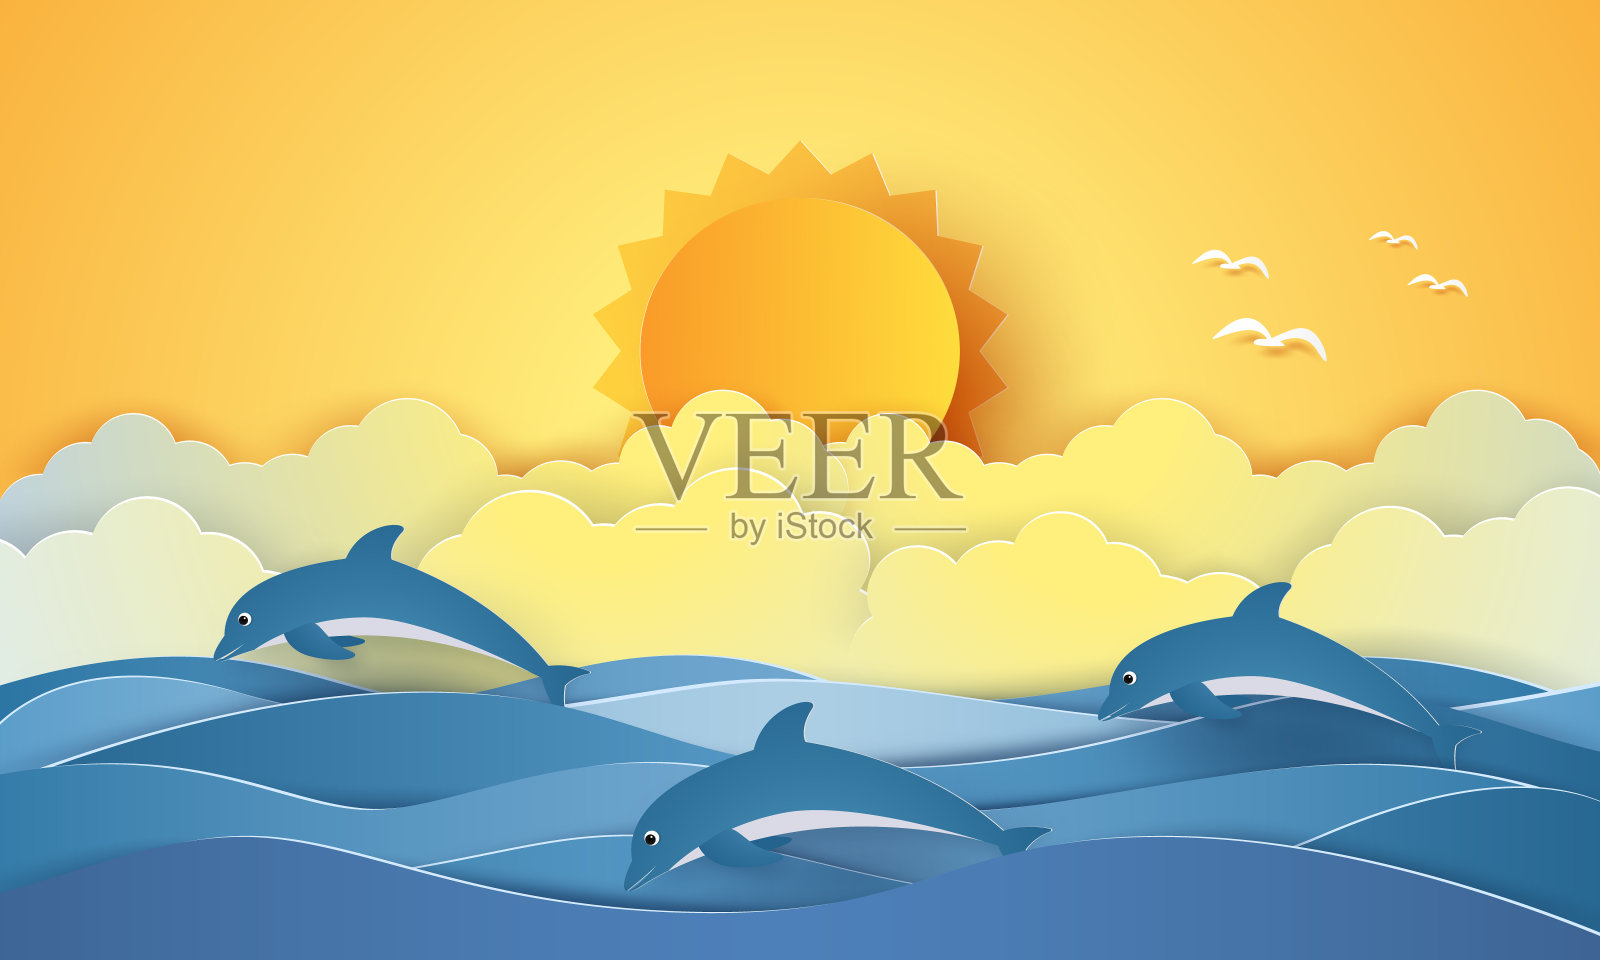 夏天的时候，海面上有海豚和阳光，纸艺术风格设计元素图片